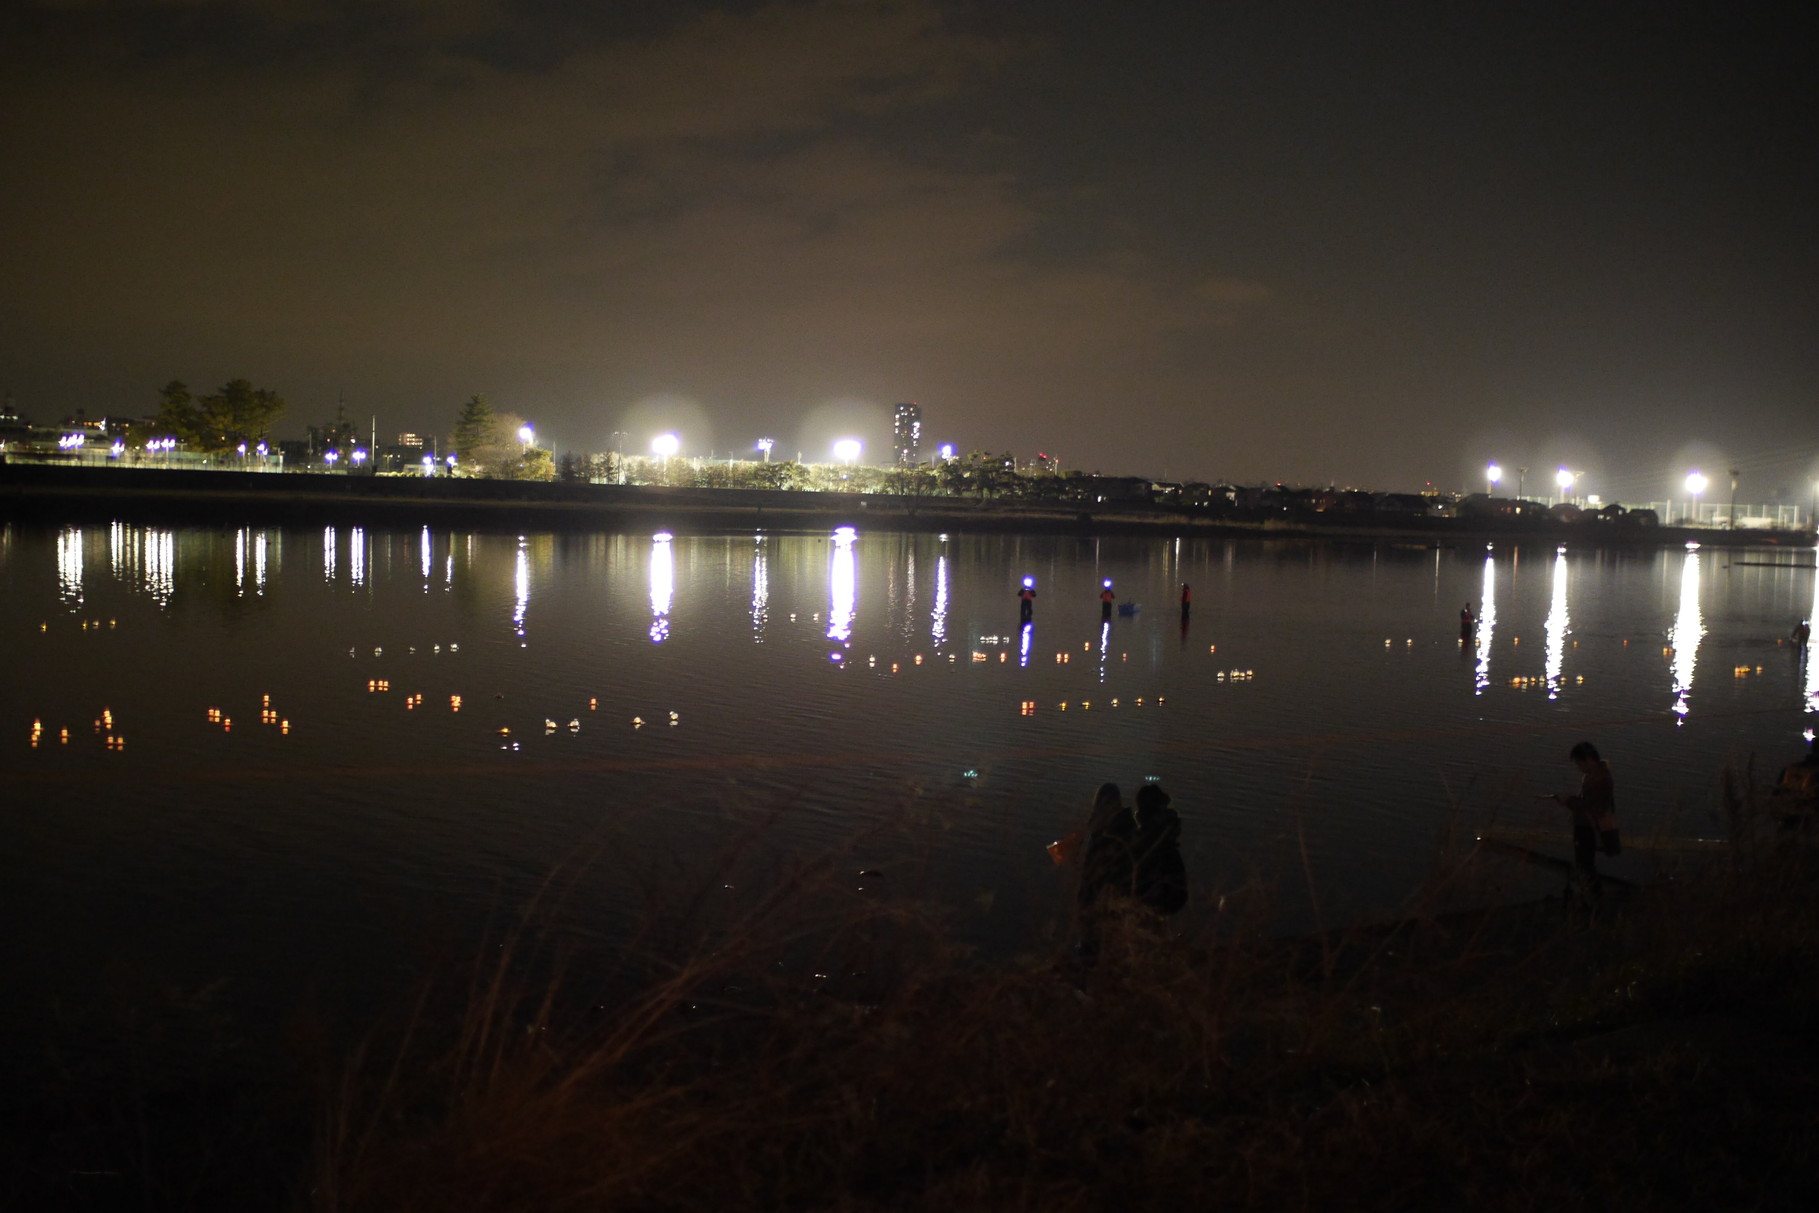 向こう岸は調布市。まぶしい。対岸からの強い調光を受けて、多摩川に漂う灯ろうがよく見えます。